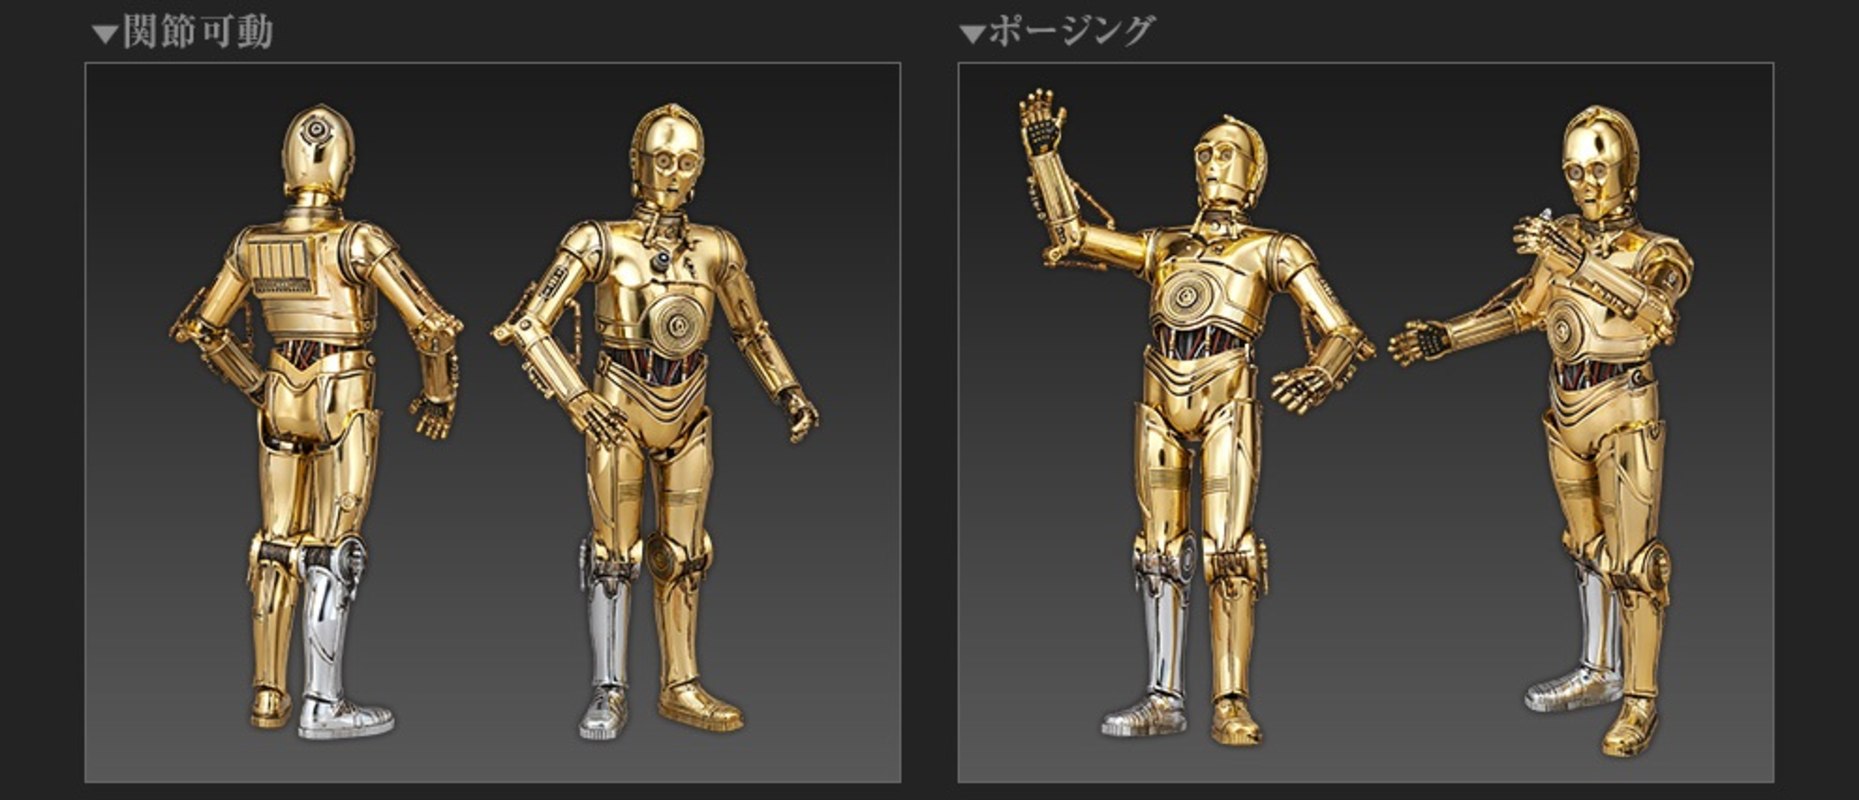 Golden chrome C-3po Droid Model Kit Bandai 1/12 Star Wars New Official 